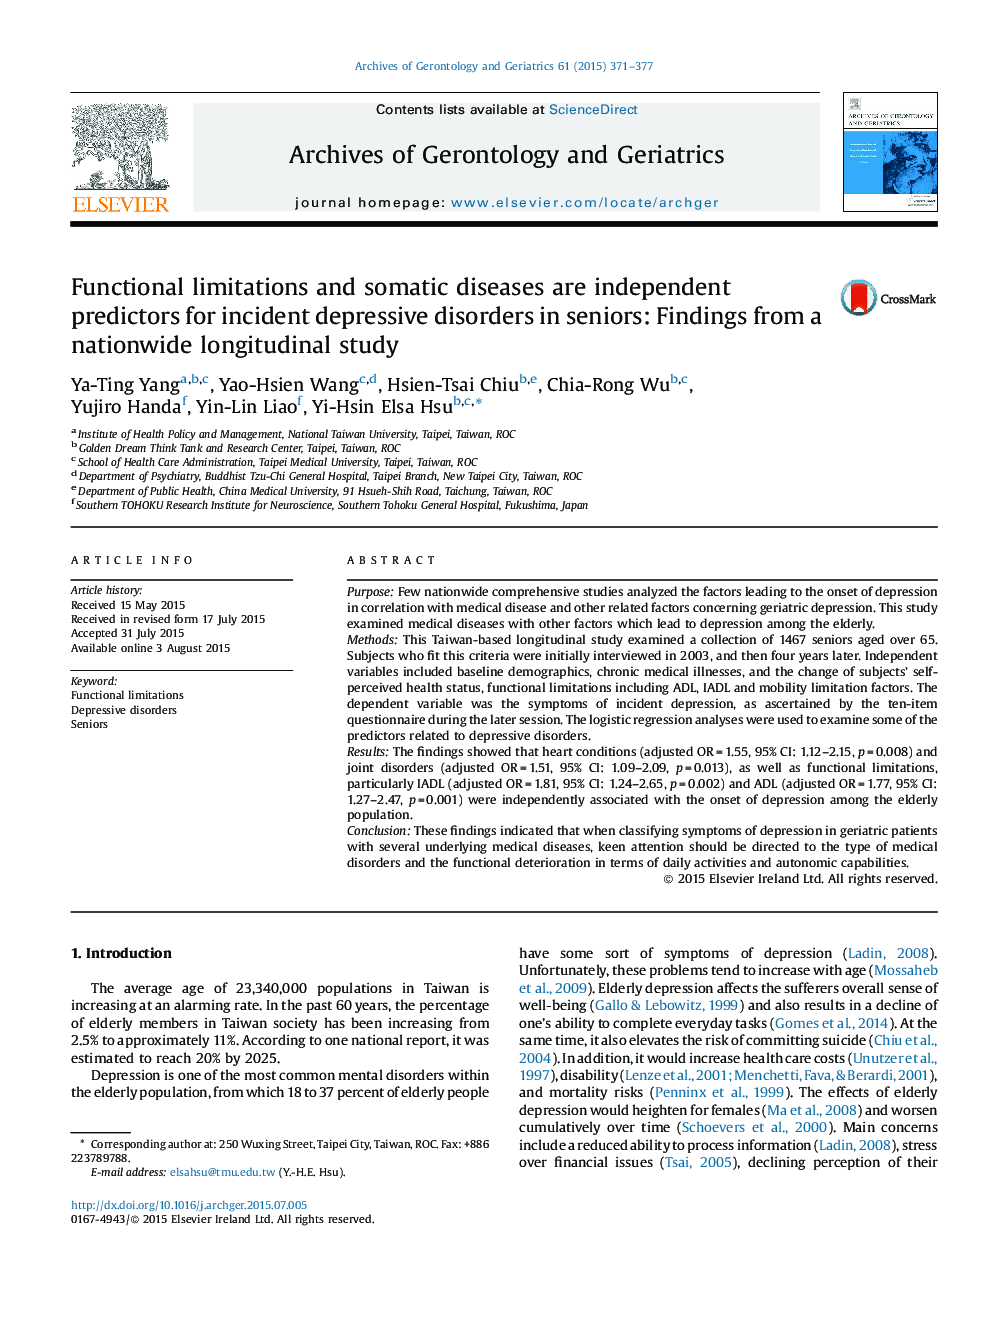 محدودیت های عملکردی و بیماری های جسمی به عنوان پیش بینی مستقل برای اختلالات افسردگی حاد در سالمندان هستند: یافته های یک مطالعه طولی در سراسر کشور 